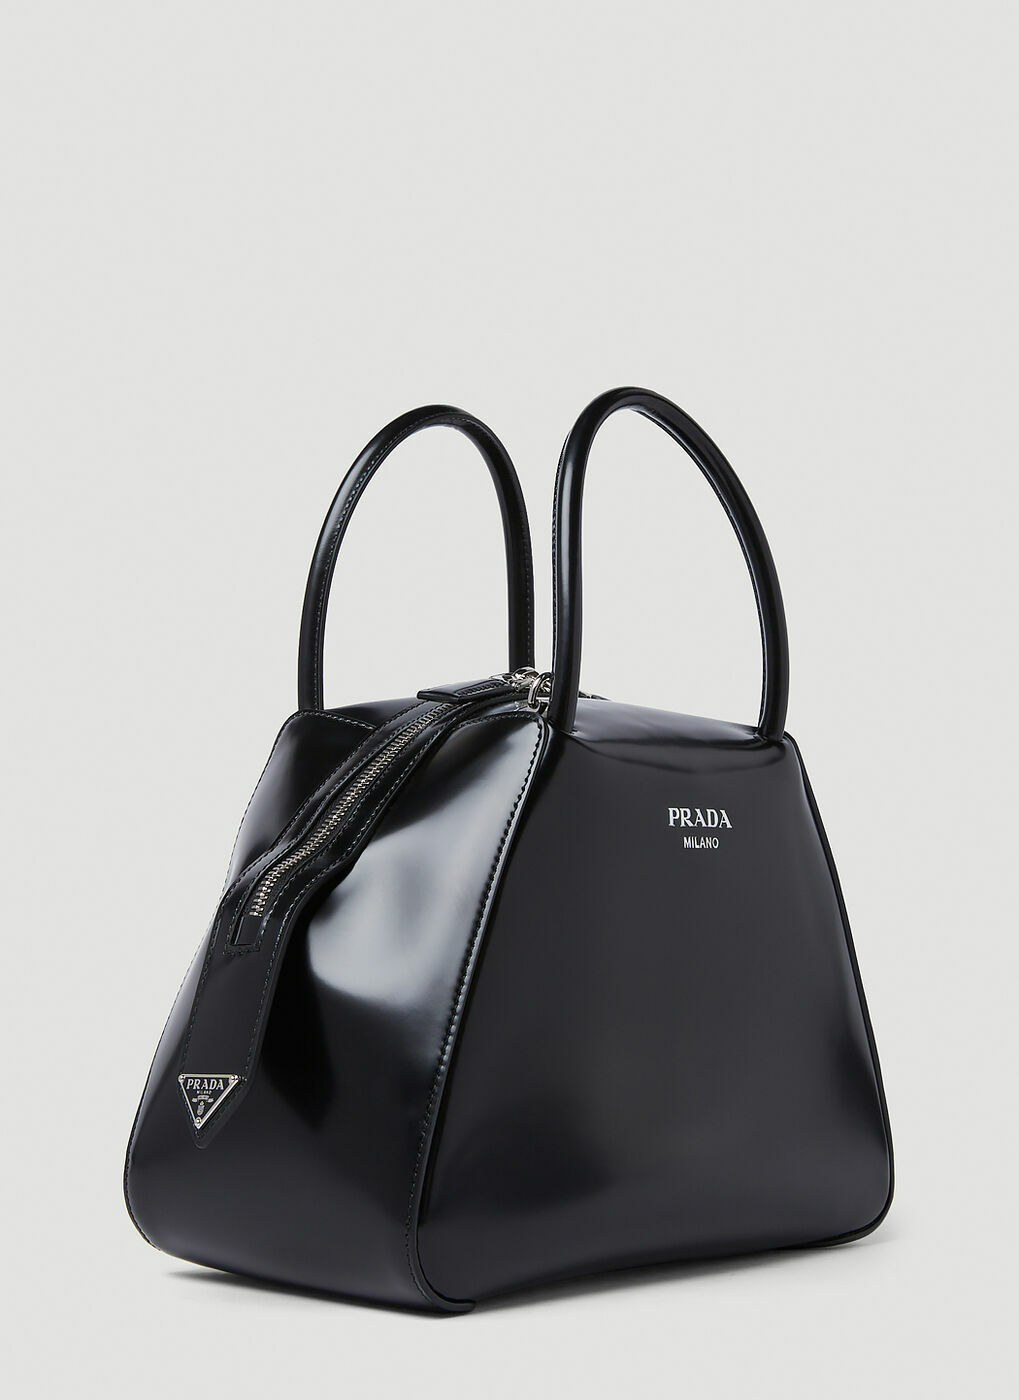 Supernova Handbag In Black Prada